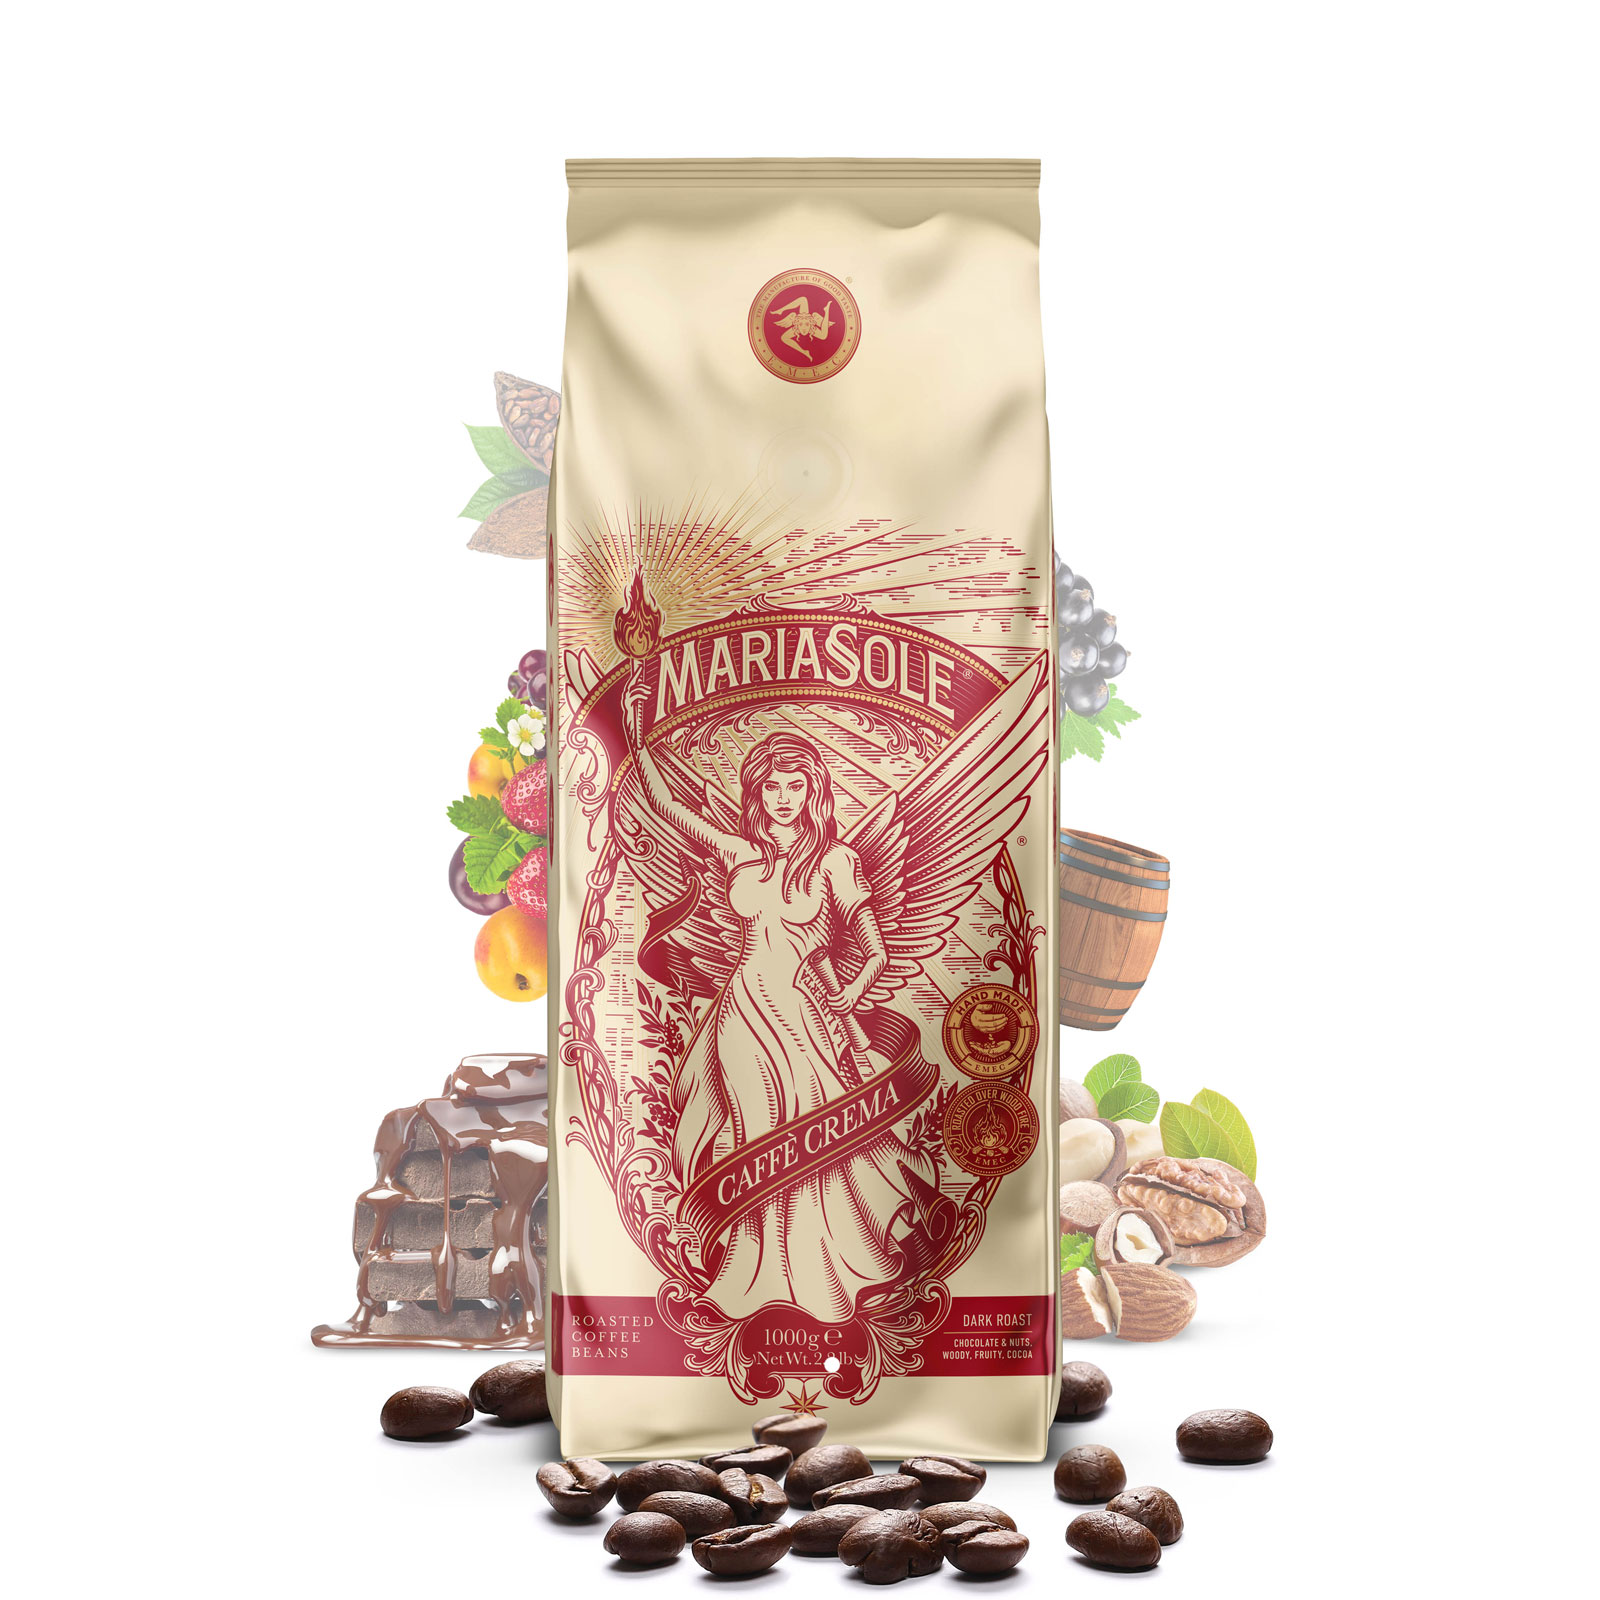 MARIASOLE - Caffè Crema - 1000g - Beans